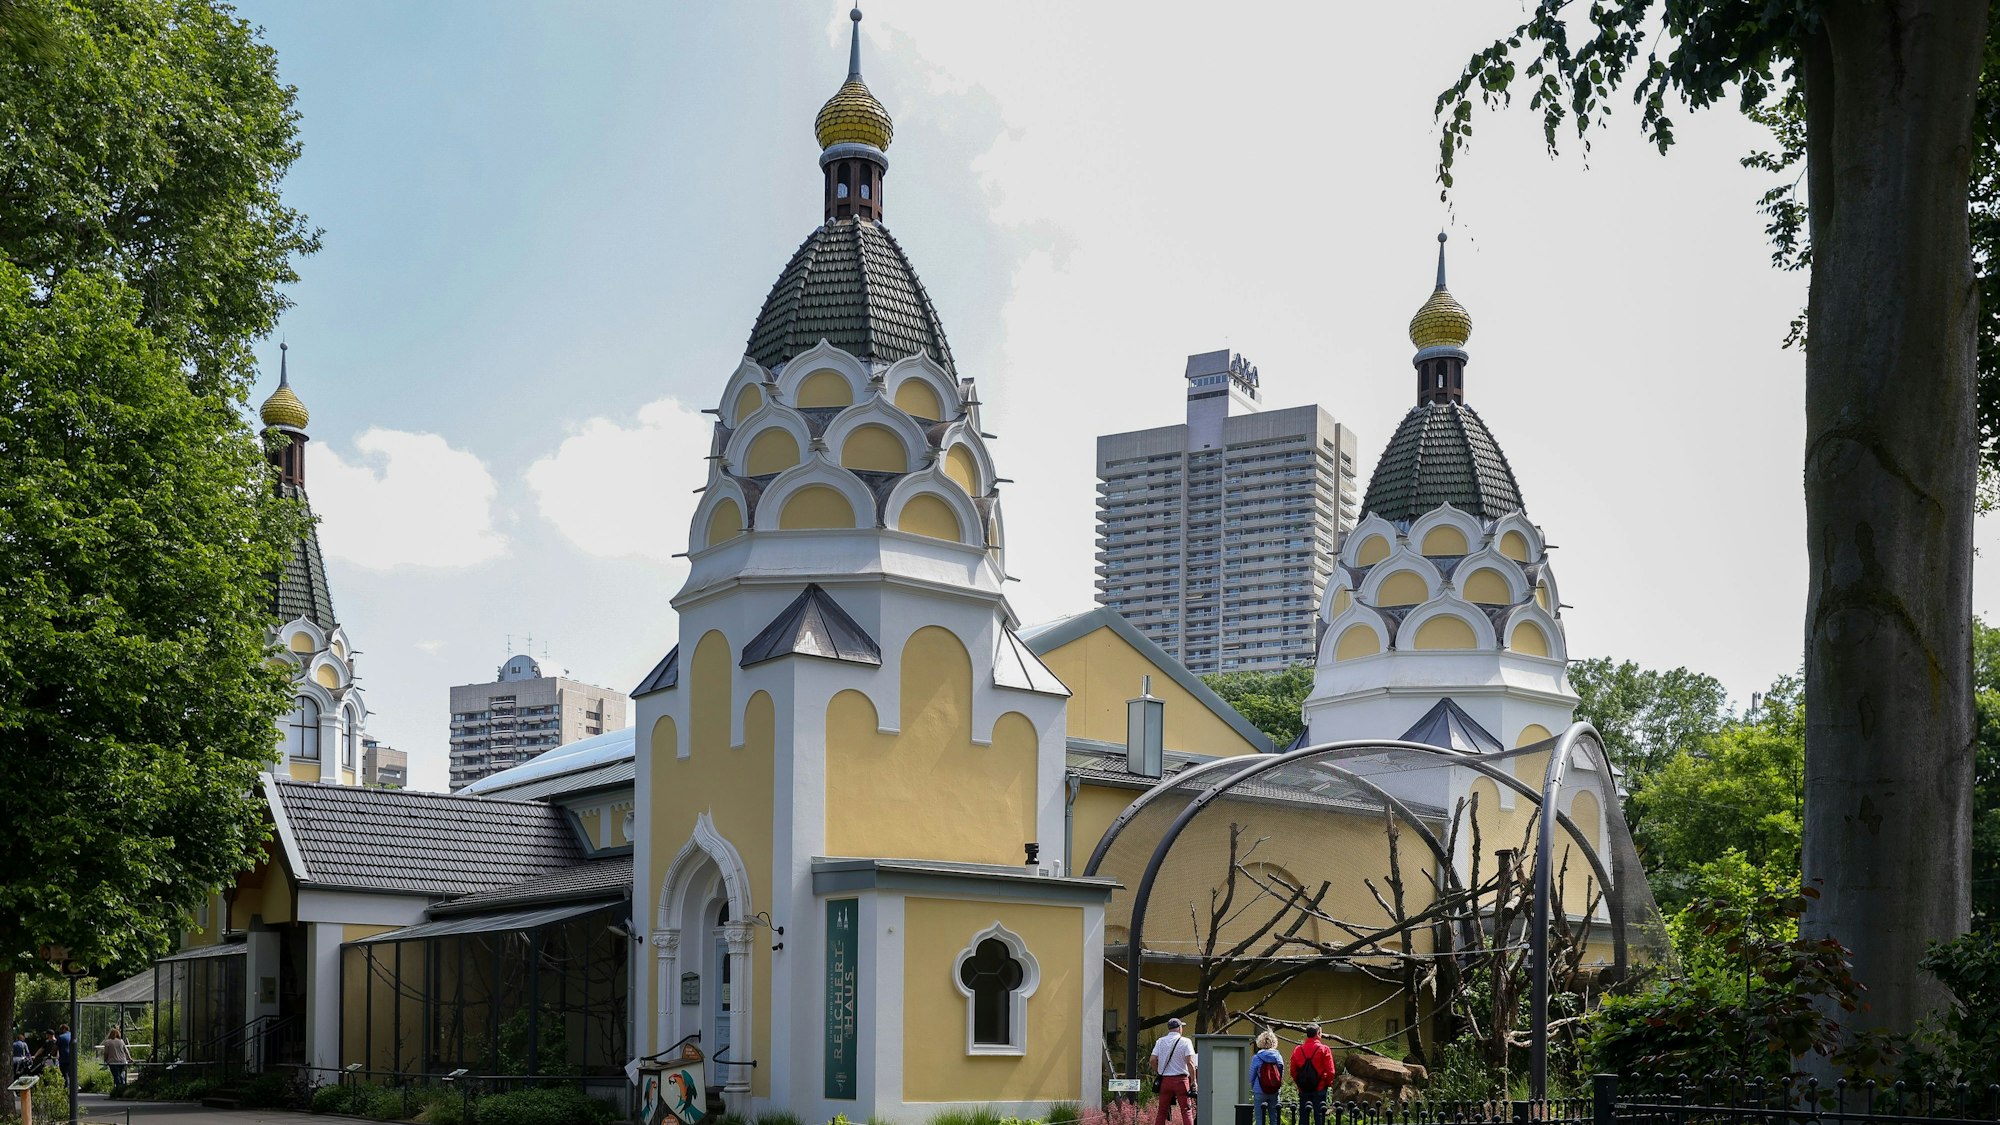 gelb-weißes Gebäude, dass einer russisch-orthodoxen Kirche ähnelt